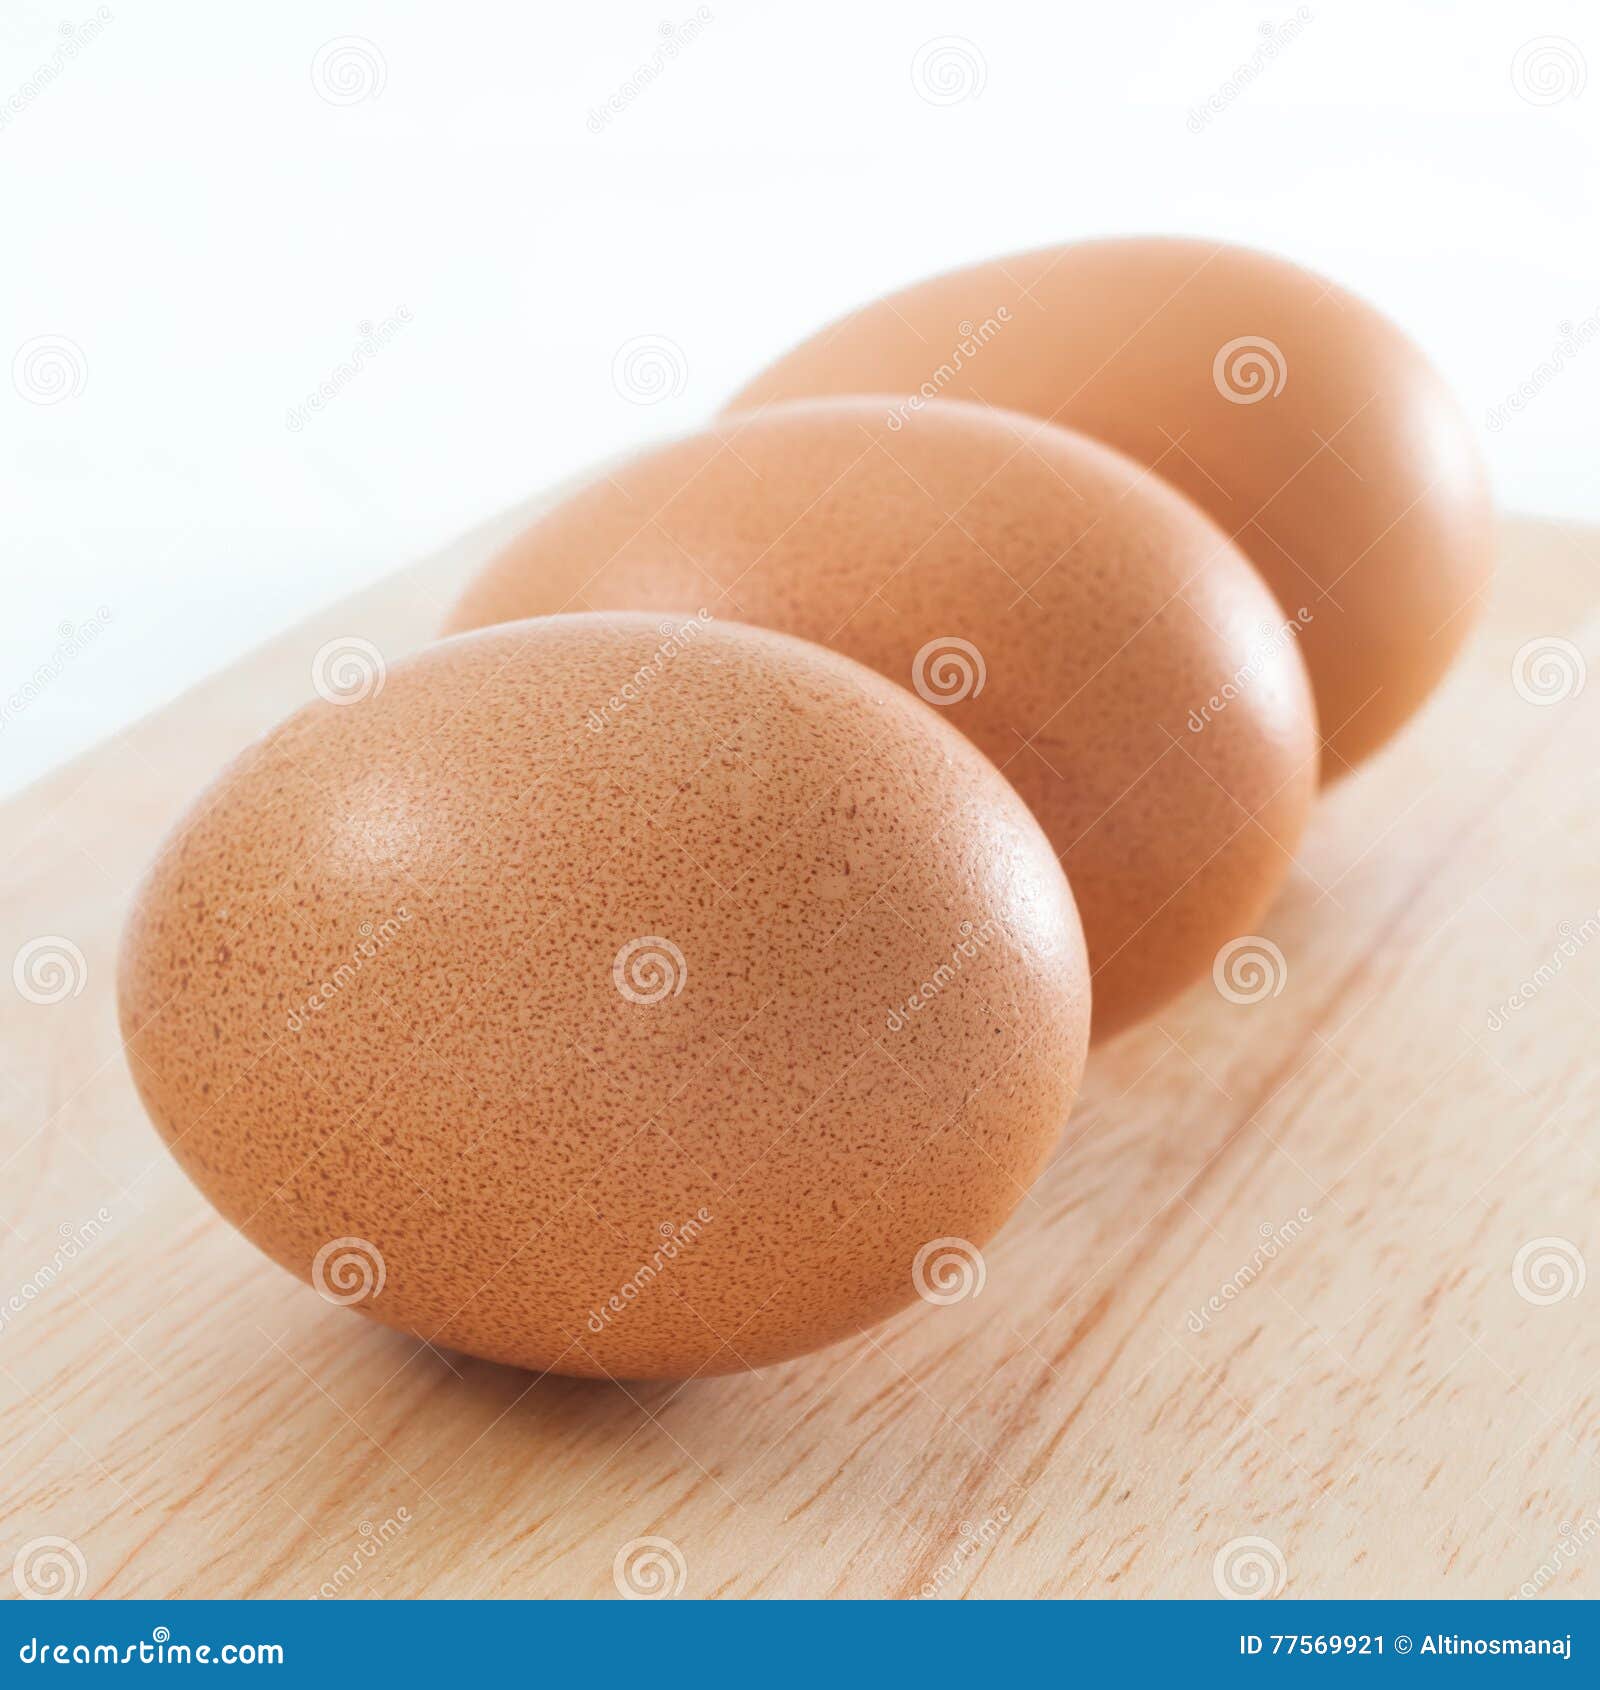 Включи 3 яйца. 3 Яйца. Три яйца фото. Яйца c3. 3 Яйца 8+.